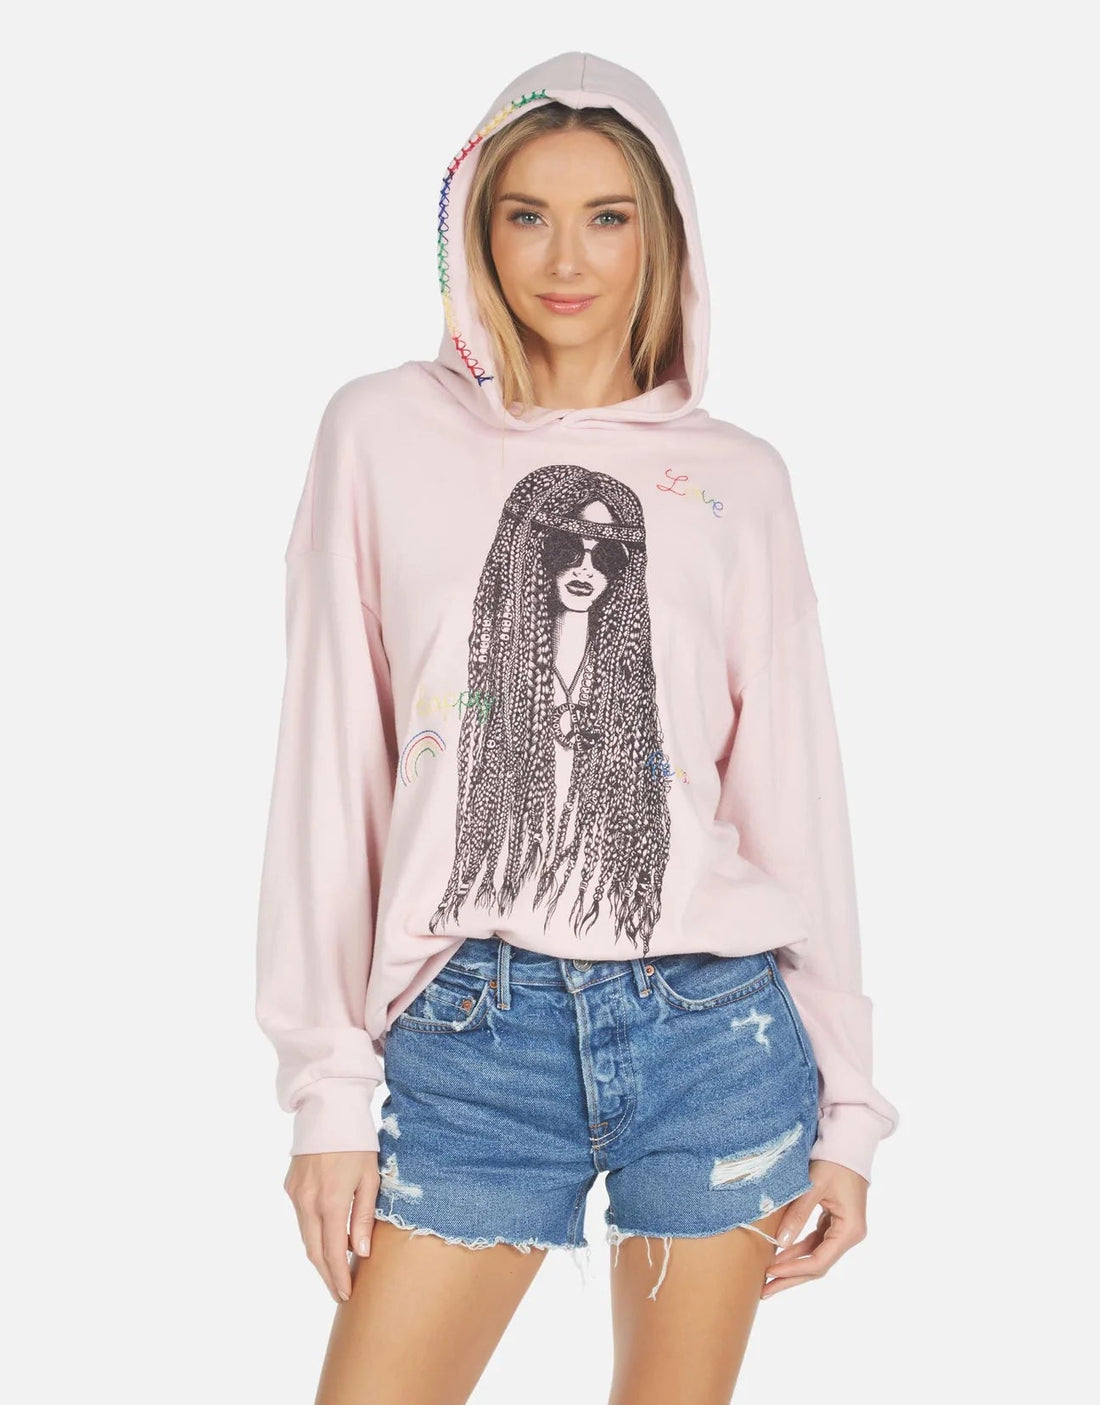 Shop Lauren Moshi Harmony Hippie Girl Hooded Sweater - Premium Sweatshirt from Lauren Moshi Online now at Spoiled Brat 